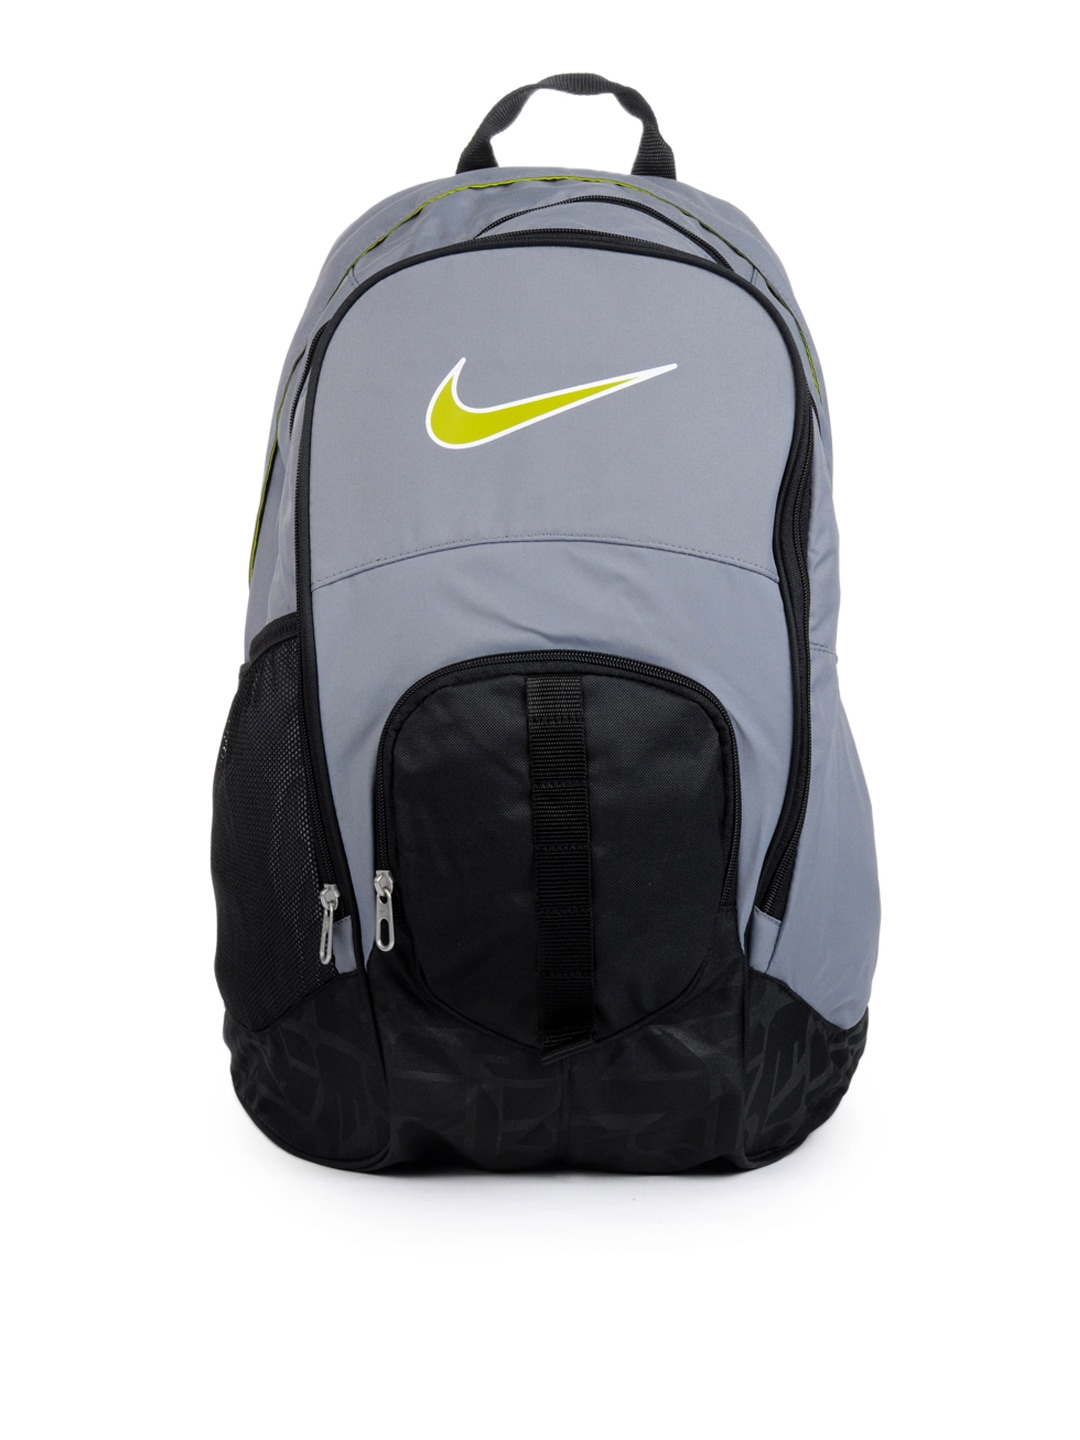 Nike Unisex Grey Backpack